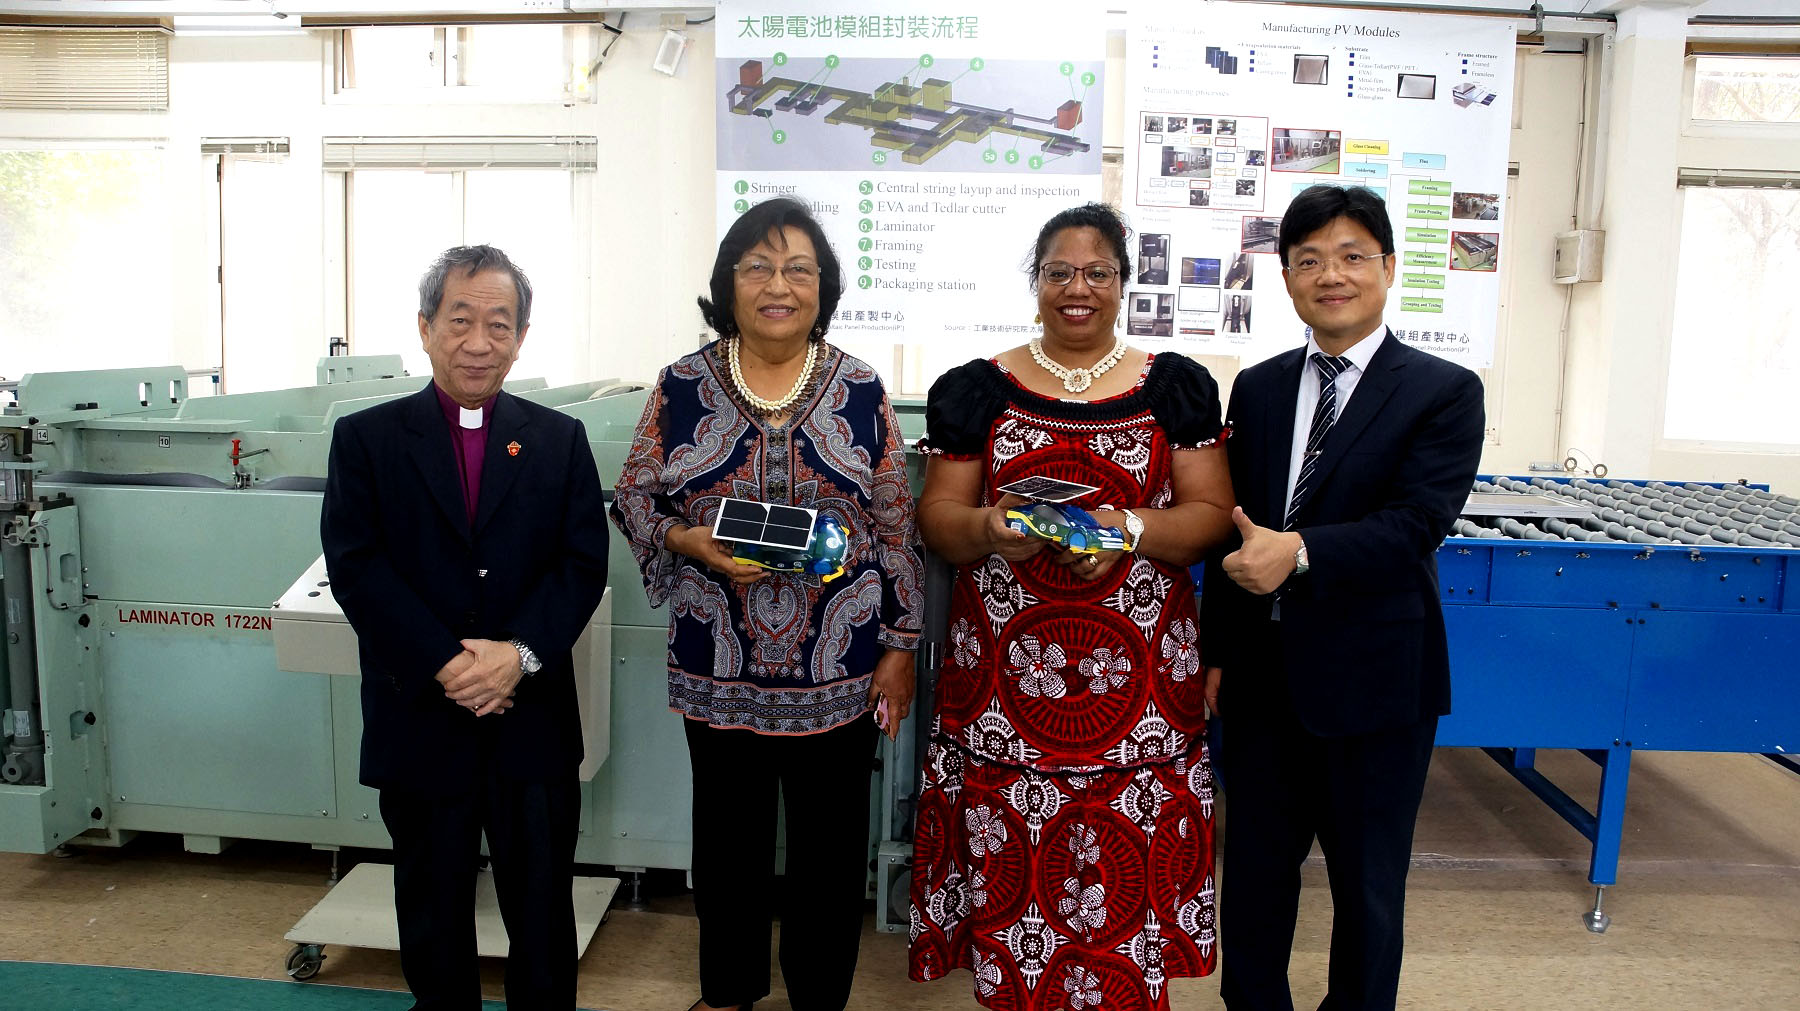 馬紹爾群島共和國艾芮瓊大使（左二）及吉里巴斯共和國藍黛西大使（右二）參觀「太陽電池模組產製中心」，由艾和昌校長（右一）負責導覽解說。